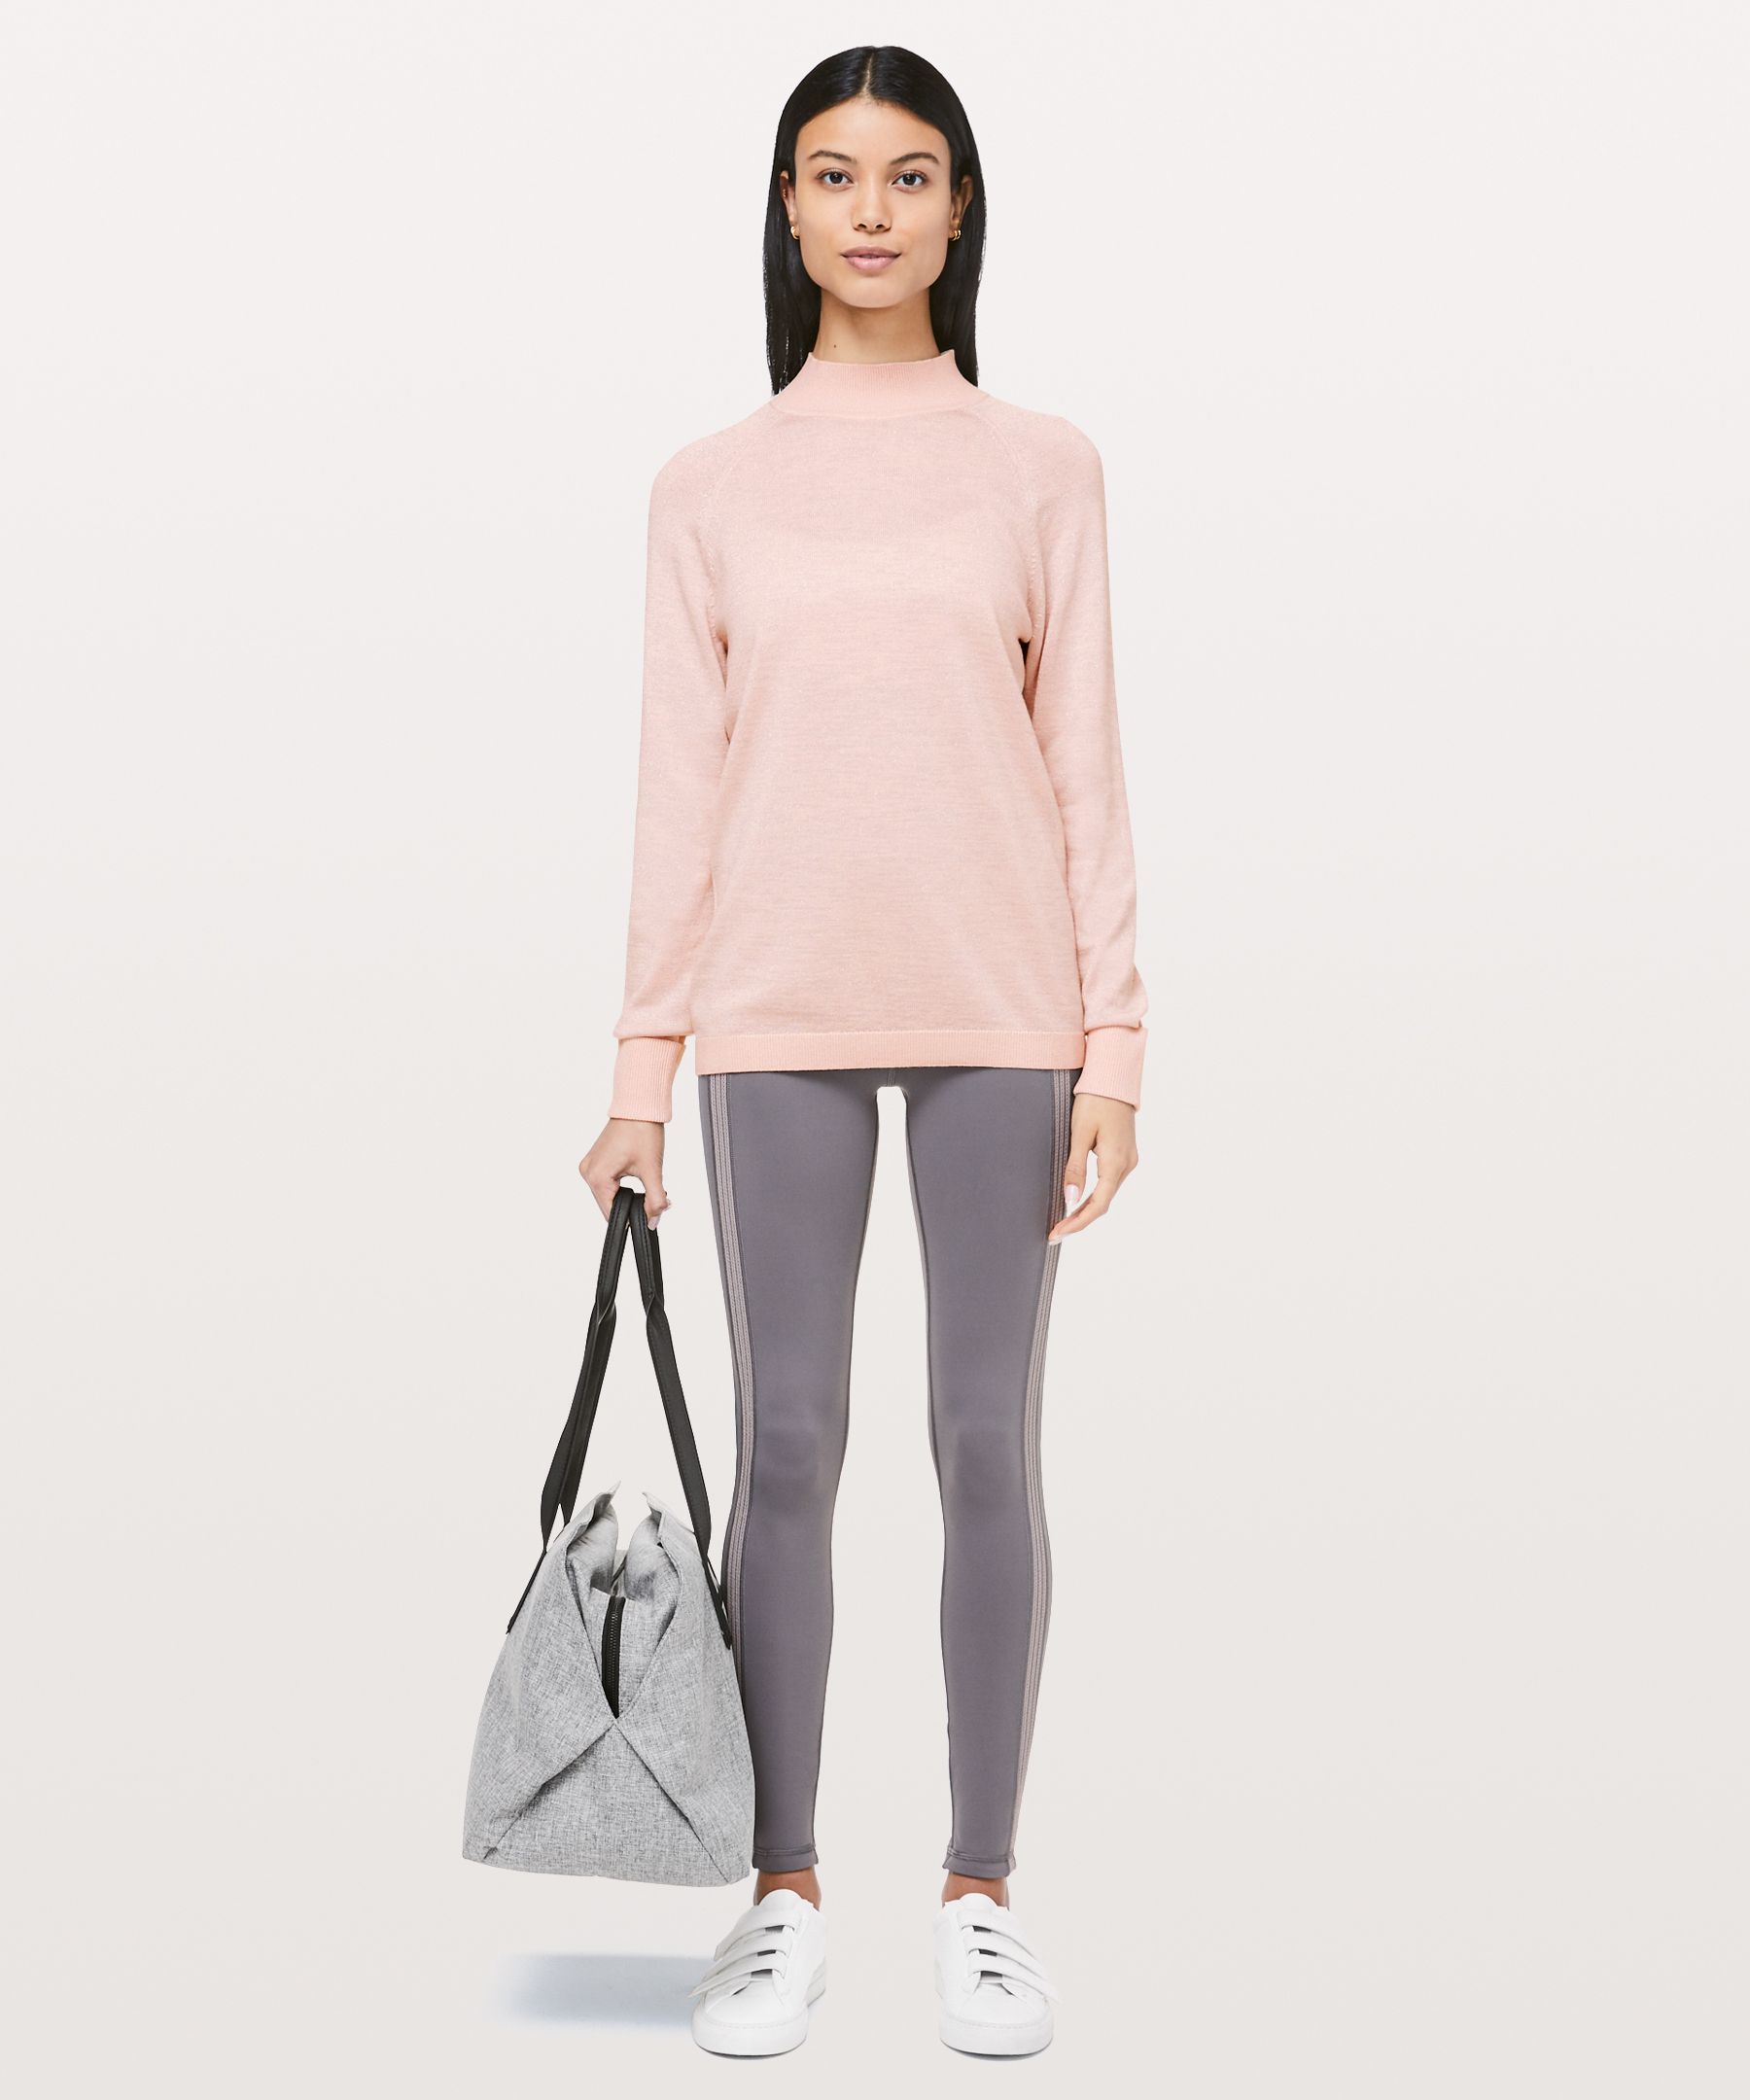 lululemon soft shine sweater